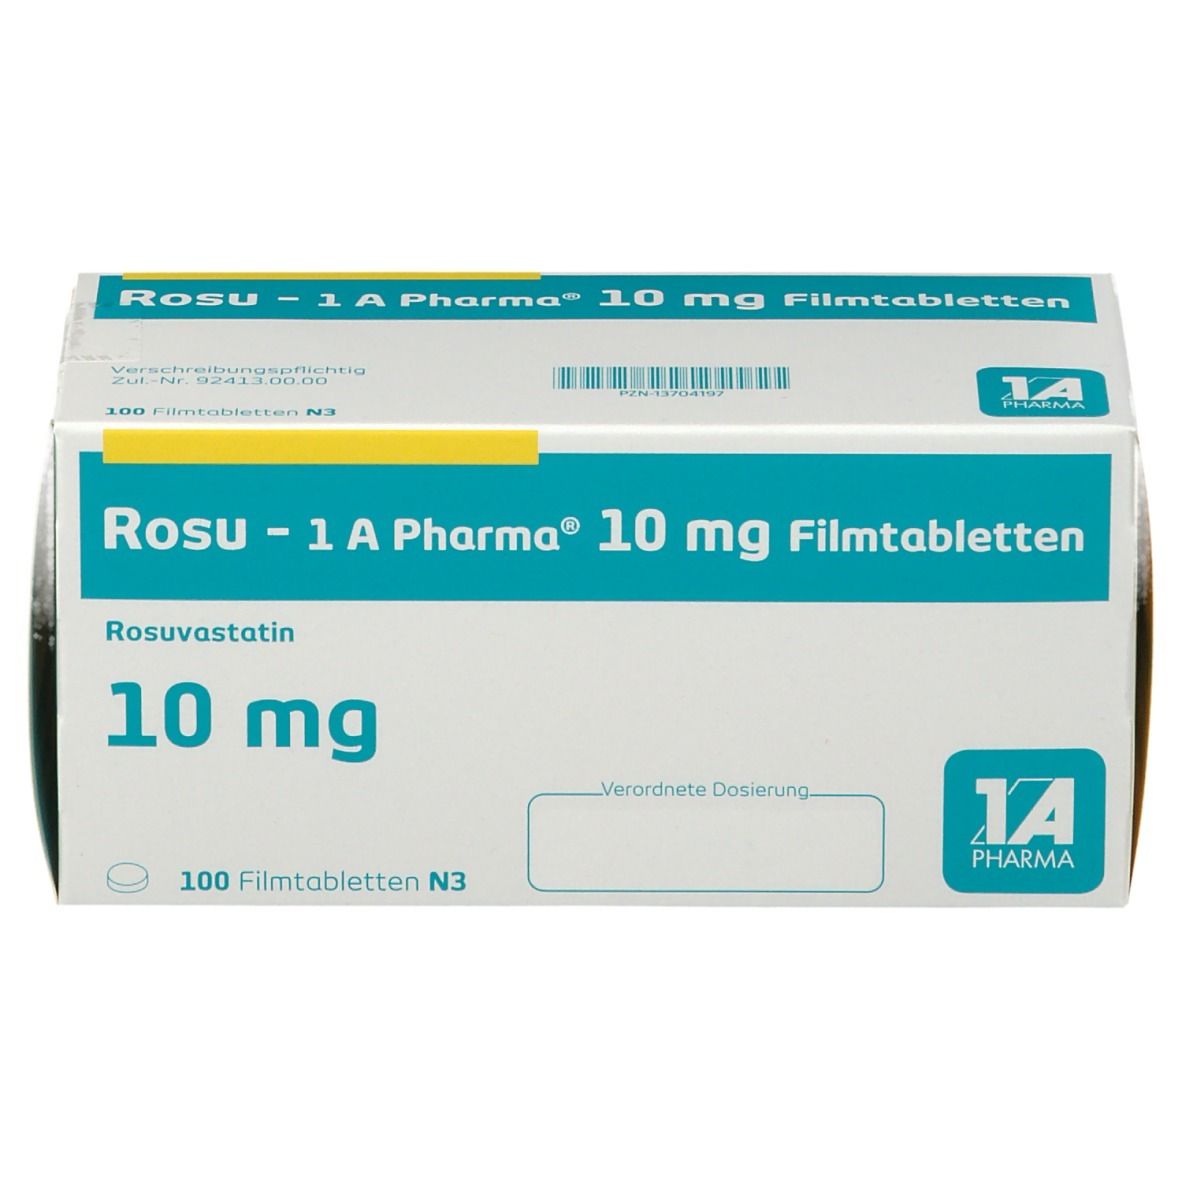 Rosu - 1 A Pharma® 10 mg